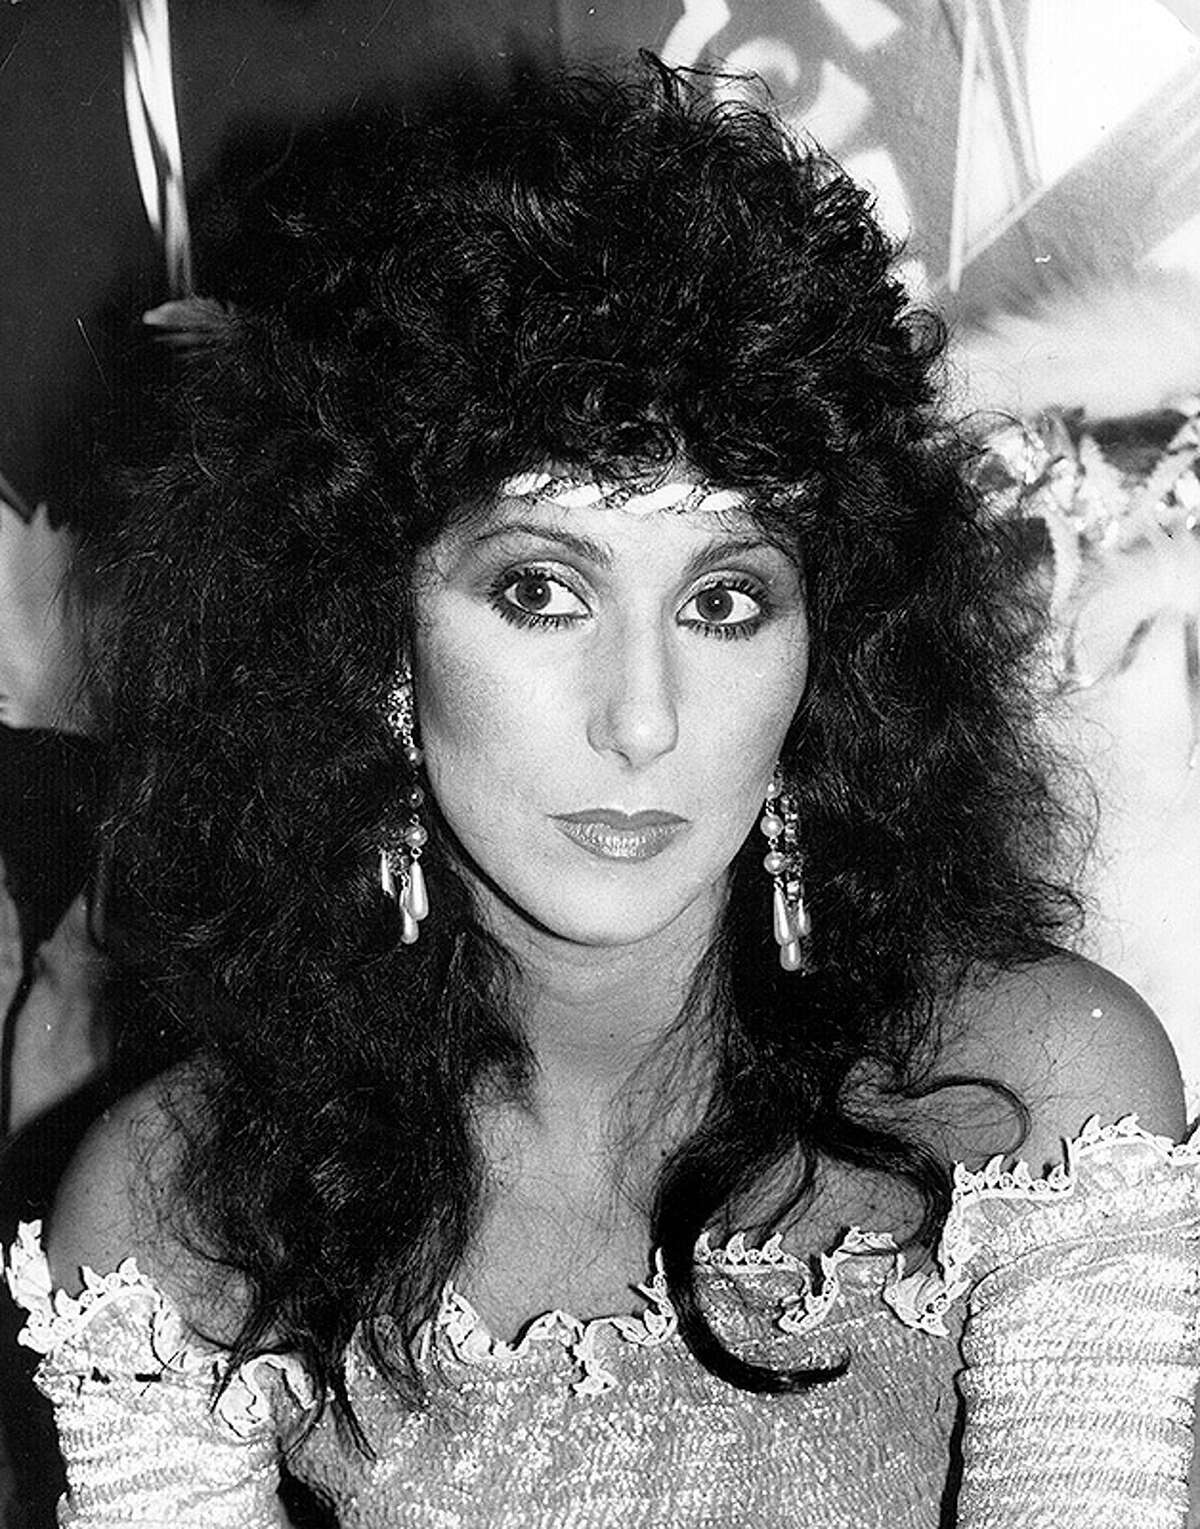 Cher turns 65